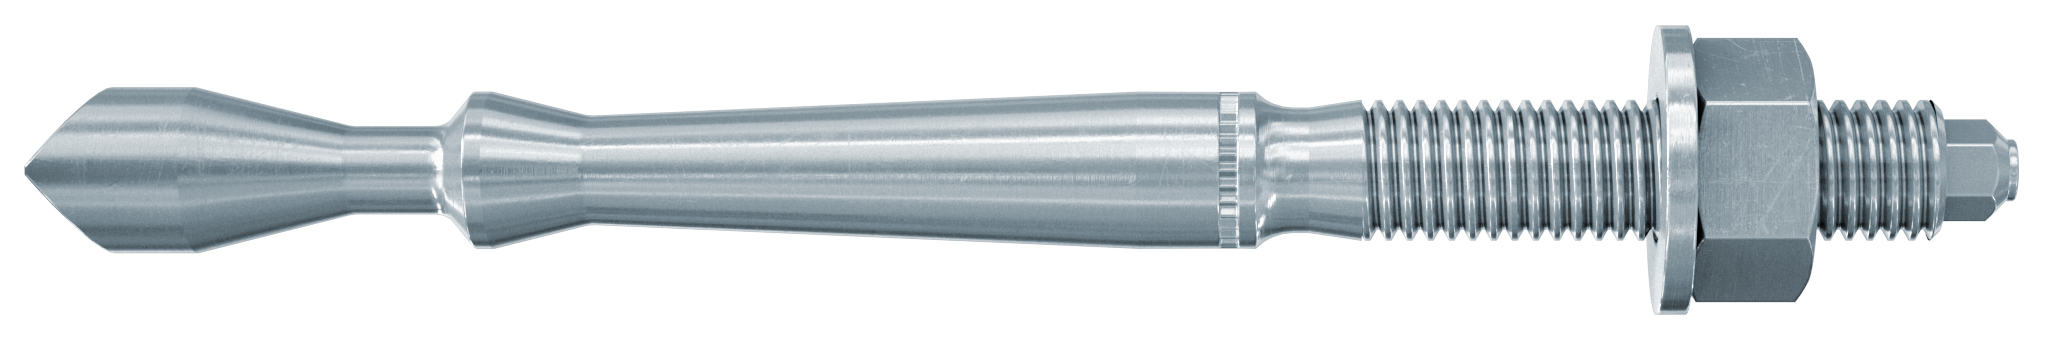 fischer Barra multicono in acciaio FHB II-A L M8x60-50 per ancorante chimico FIS HB (1 Pz.) Barra multicono lunga in acciaio zincato classe 8.8. Massime prestazioni a trazione in calcestruzzo fessurato e a ridotte distanze dai bordi. fie1166